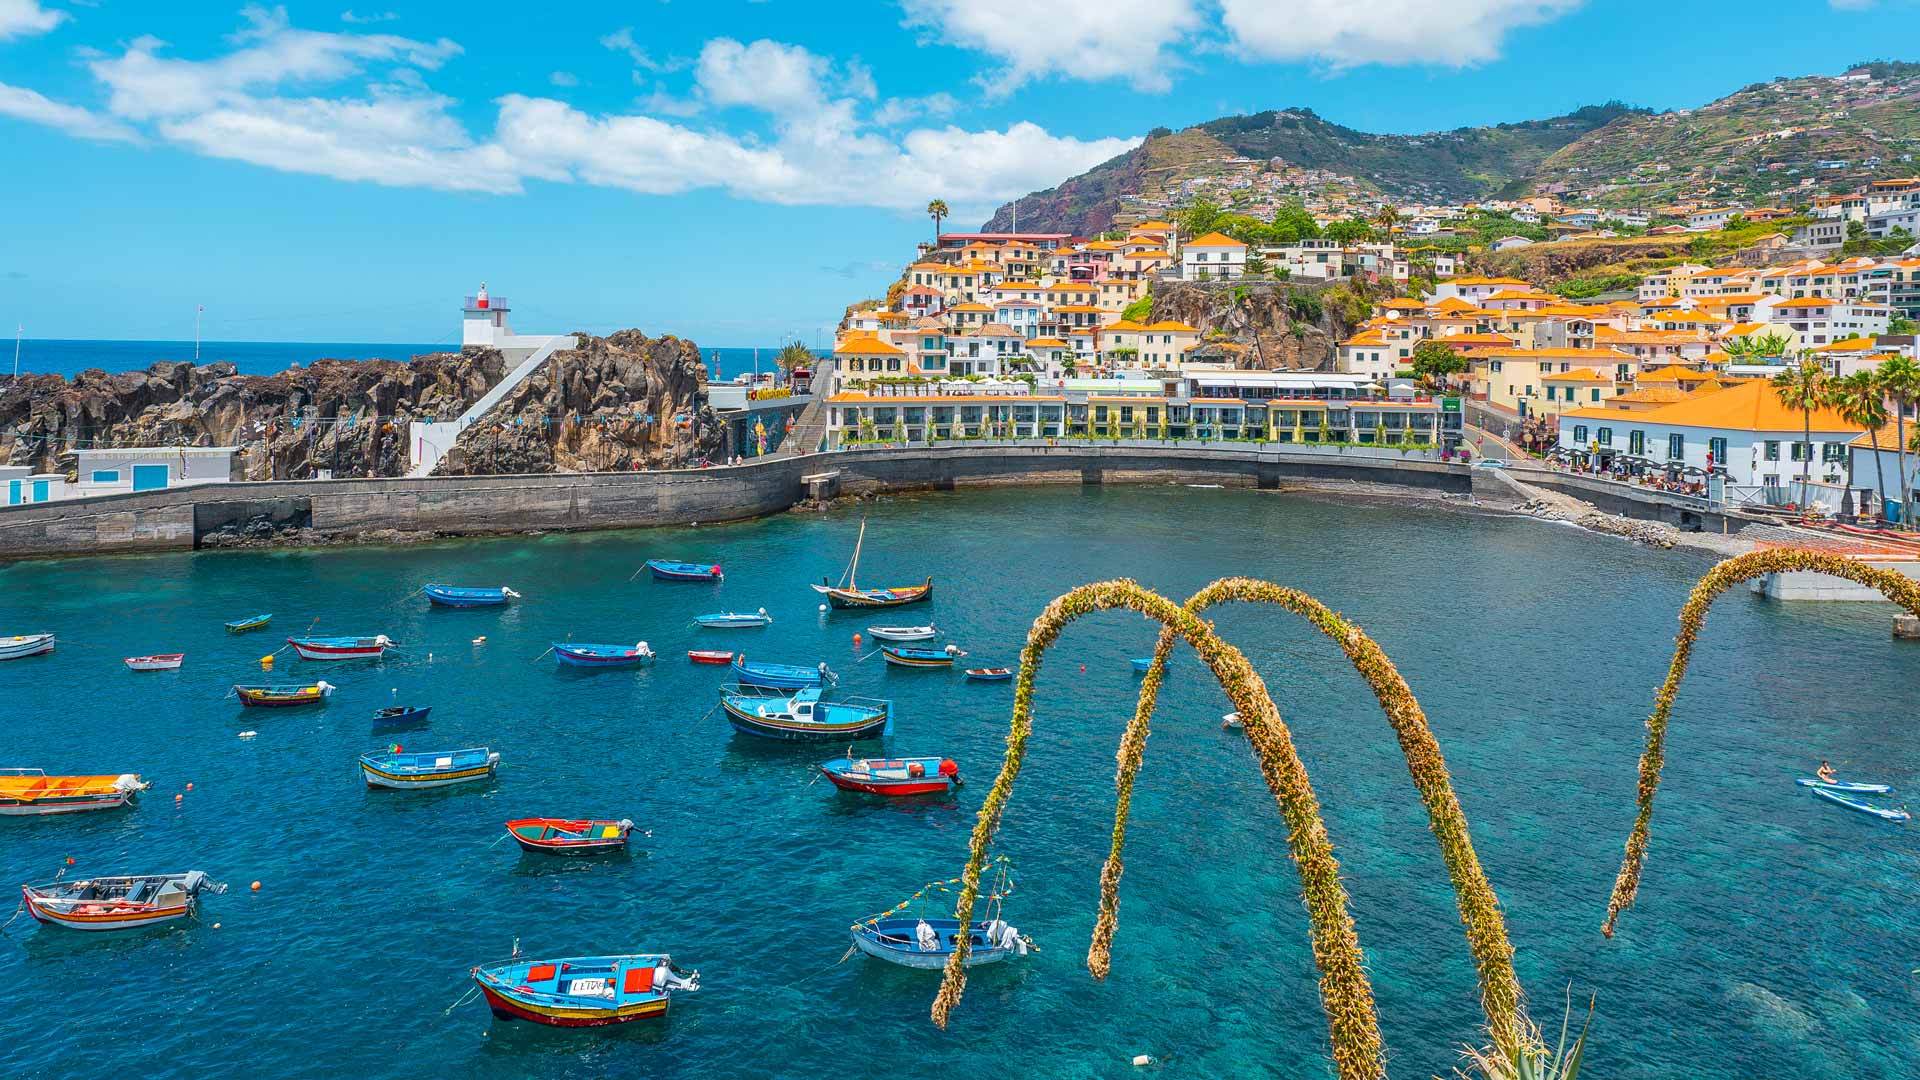 Câmara de Lobos Promenade - Visit Madeira | Madeira Islands Tourism Board  official website